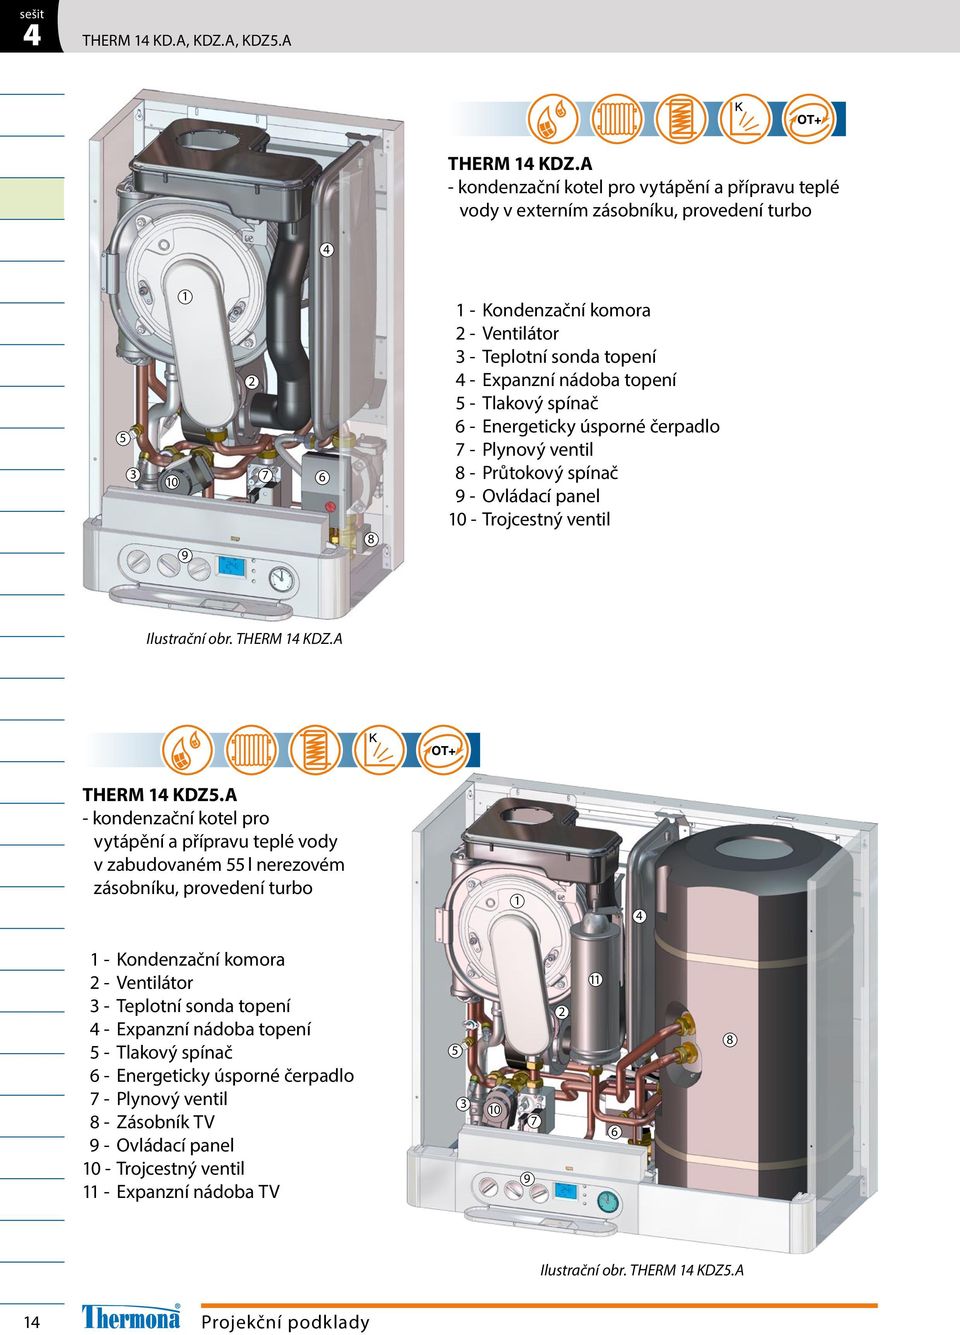 Tlakový spínač - Energeticky úsporné čerpadlo - Plynový ventil - Průtokový spínač - Ovládací panel 0 - Trojcestný ventil Ilustrační obr. THERM KDZ.A THERM KDZ.